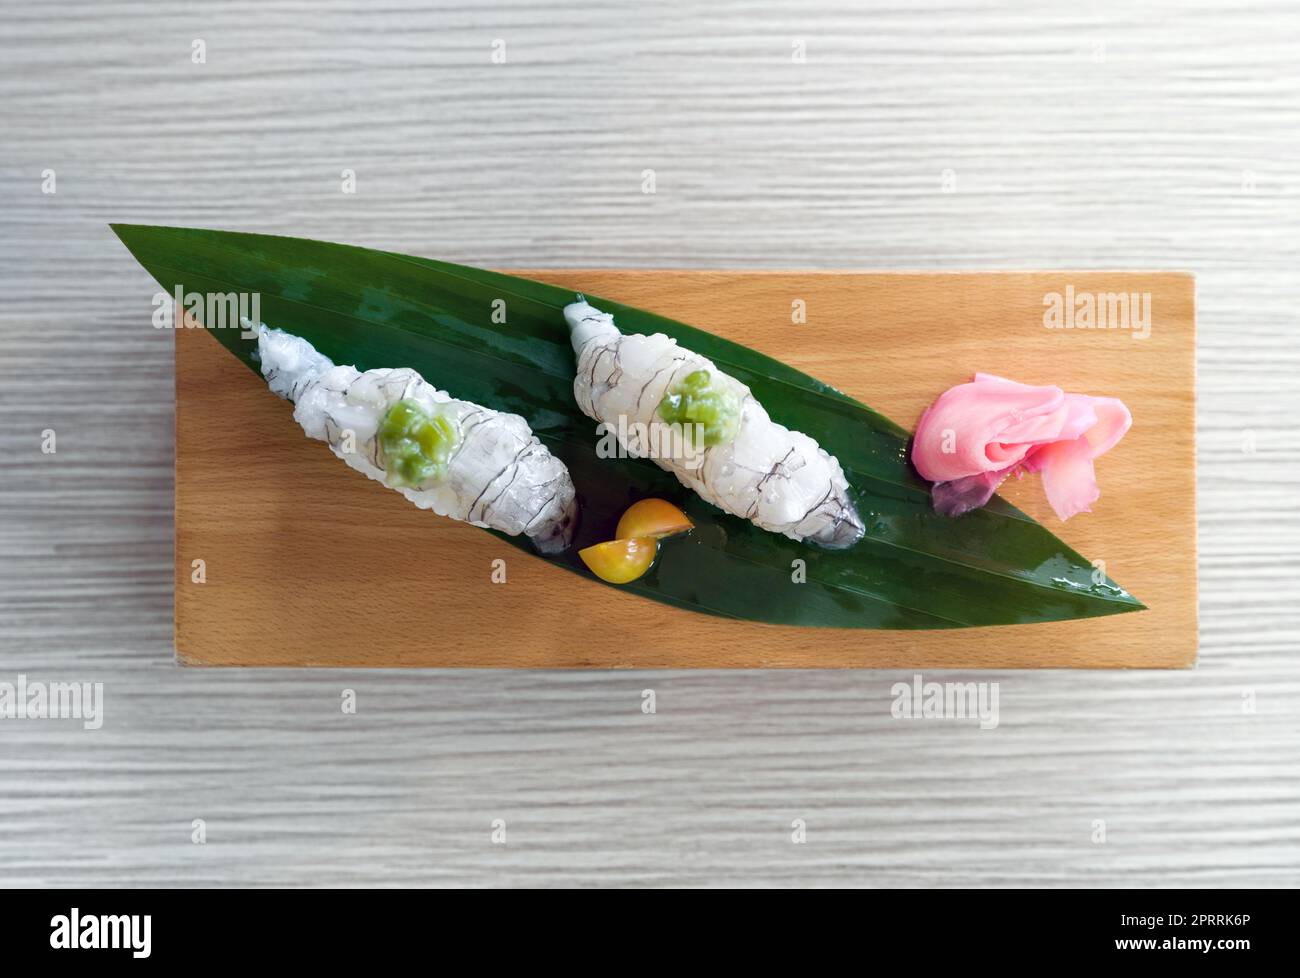 Shako Sushi servi sur une assiette en bois décorée de feuilles de bambou. Vue de dessus Banque D'Images